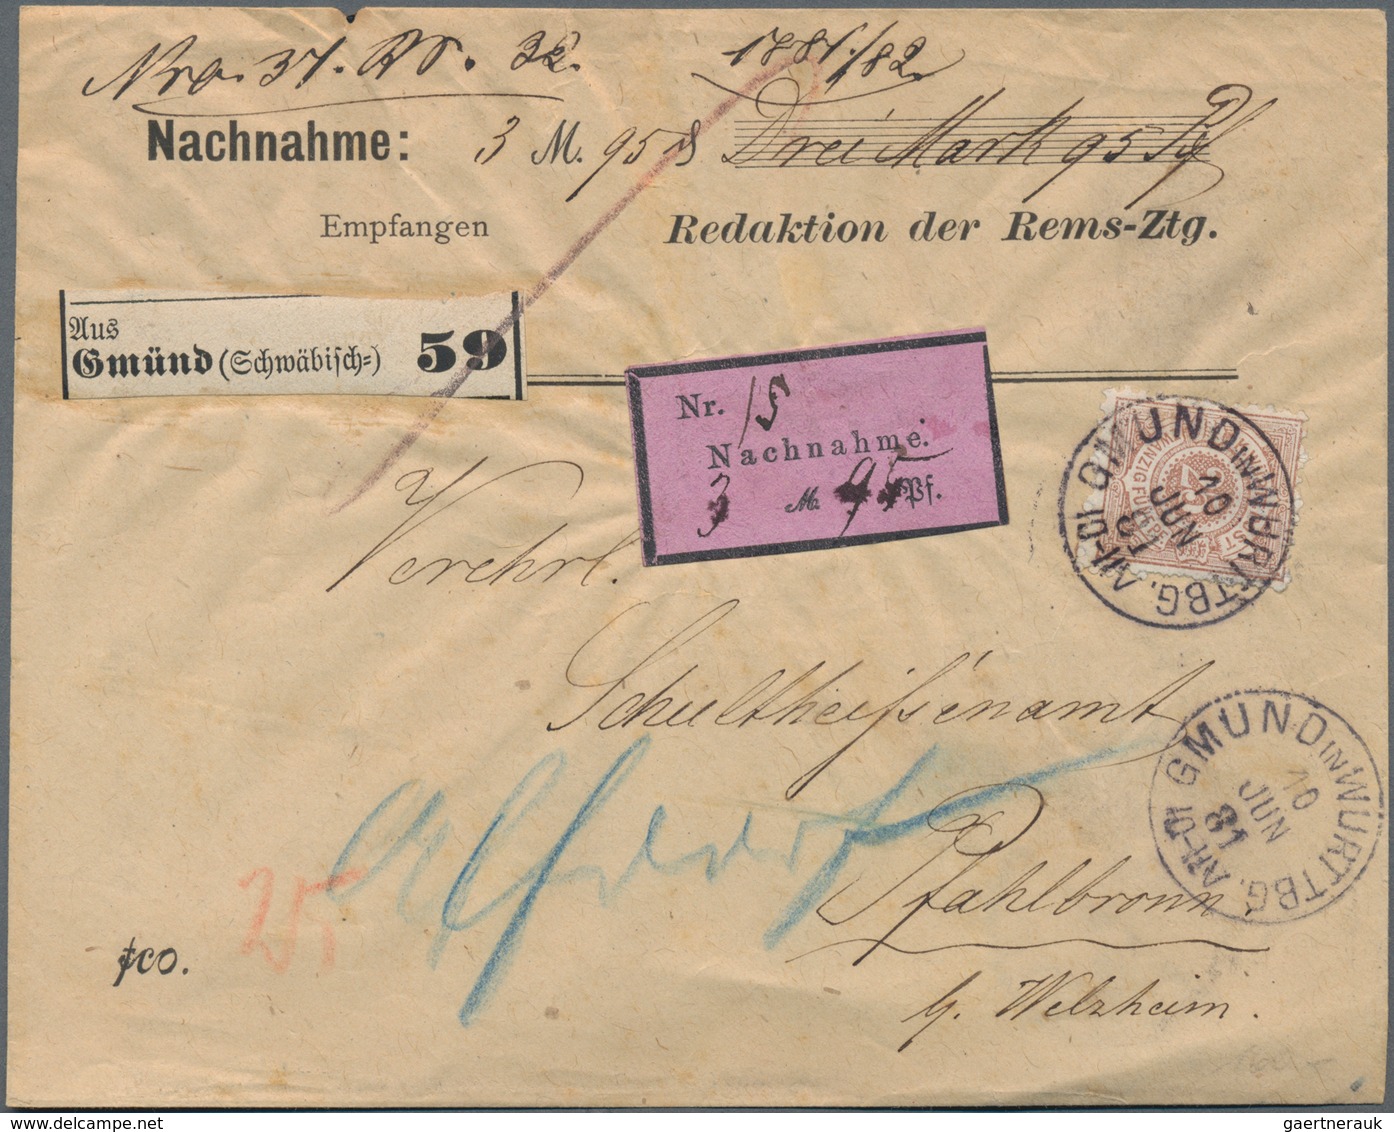 Württemberg - Marken und Briefe: 1851/1920 (ca.), vielseitiger Bestand von einigen hundert Briefen,